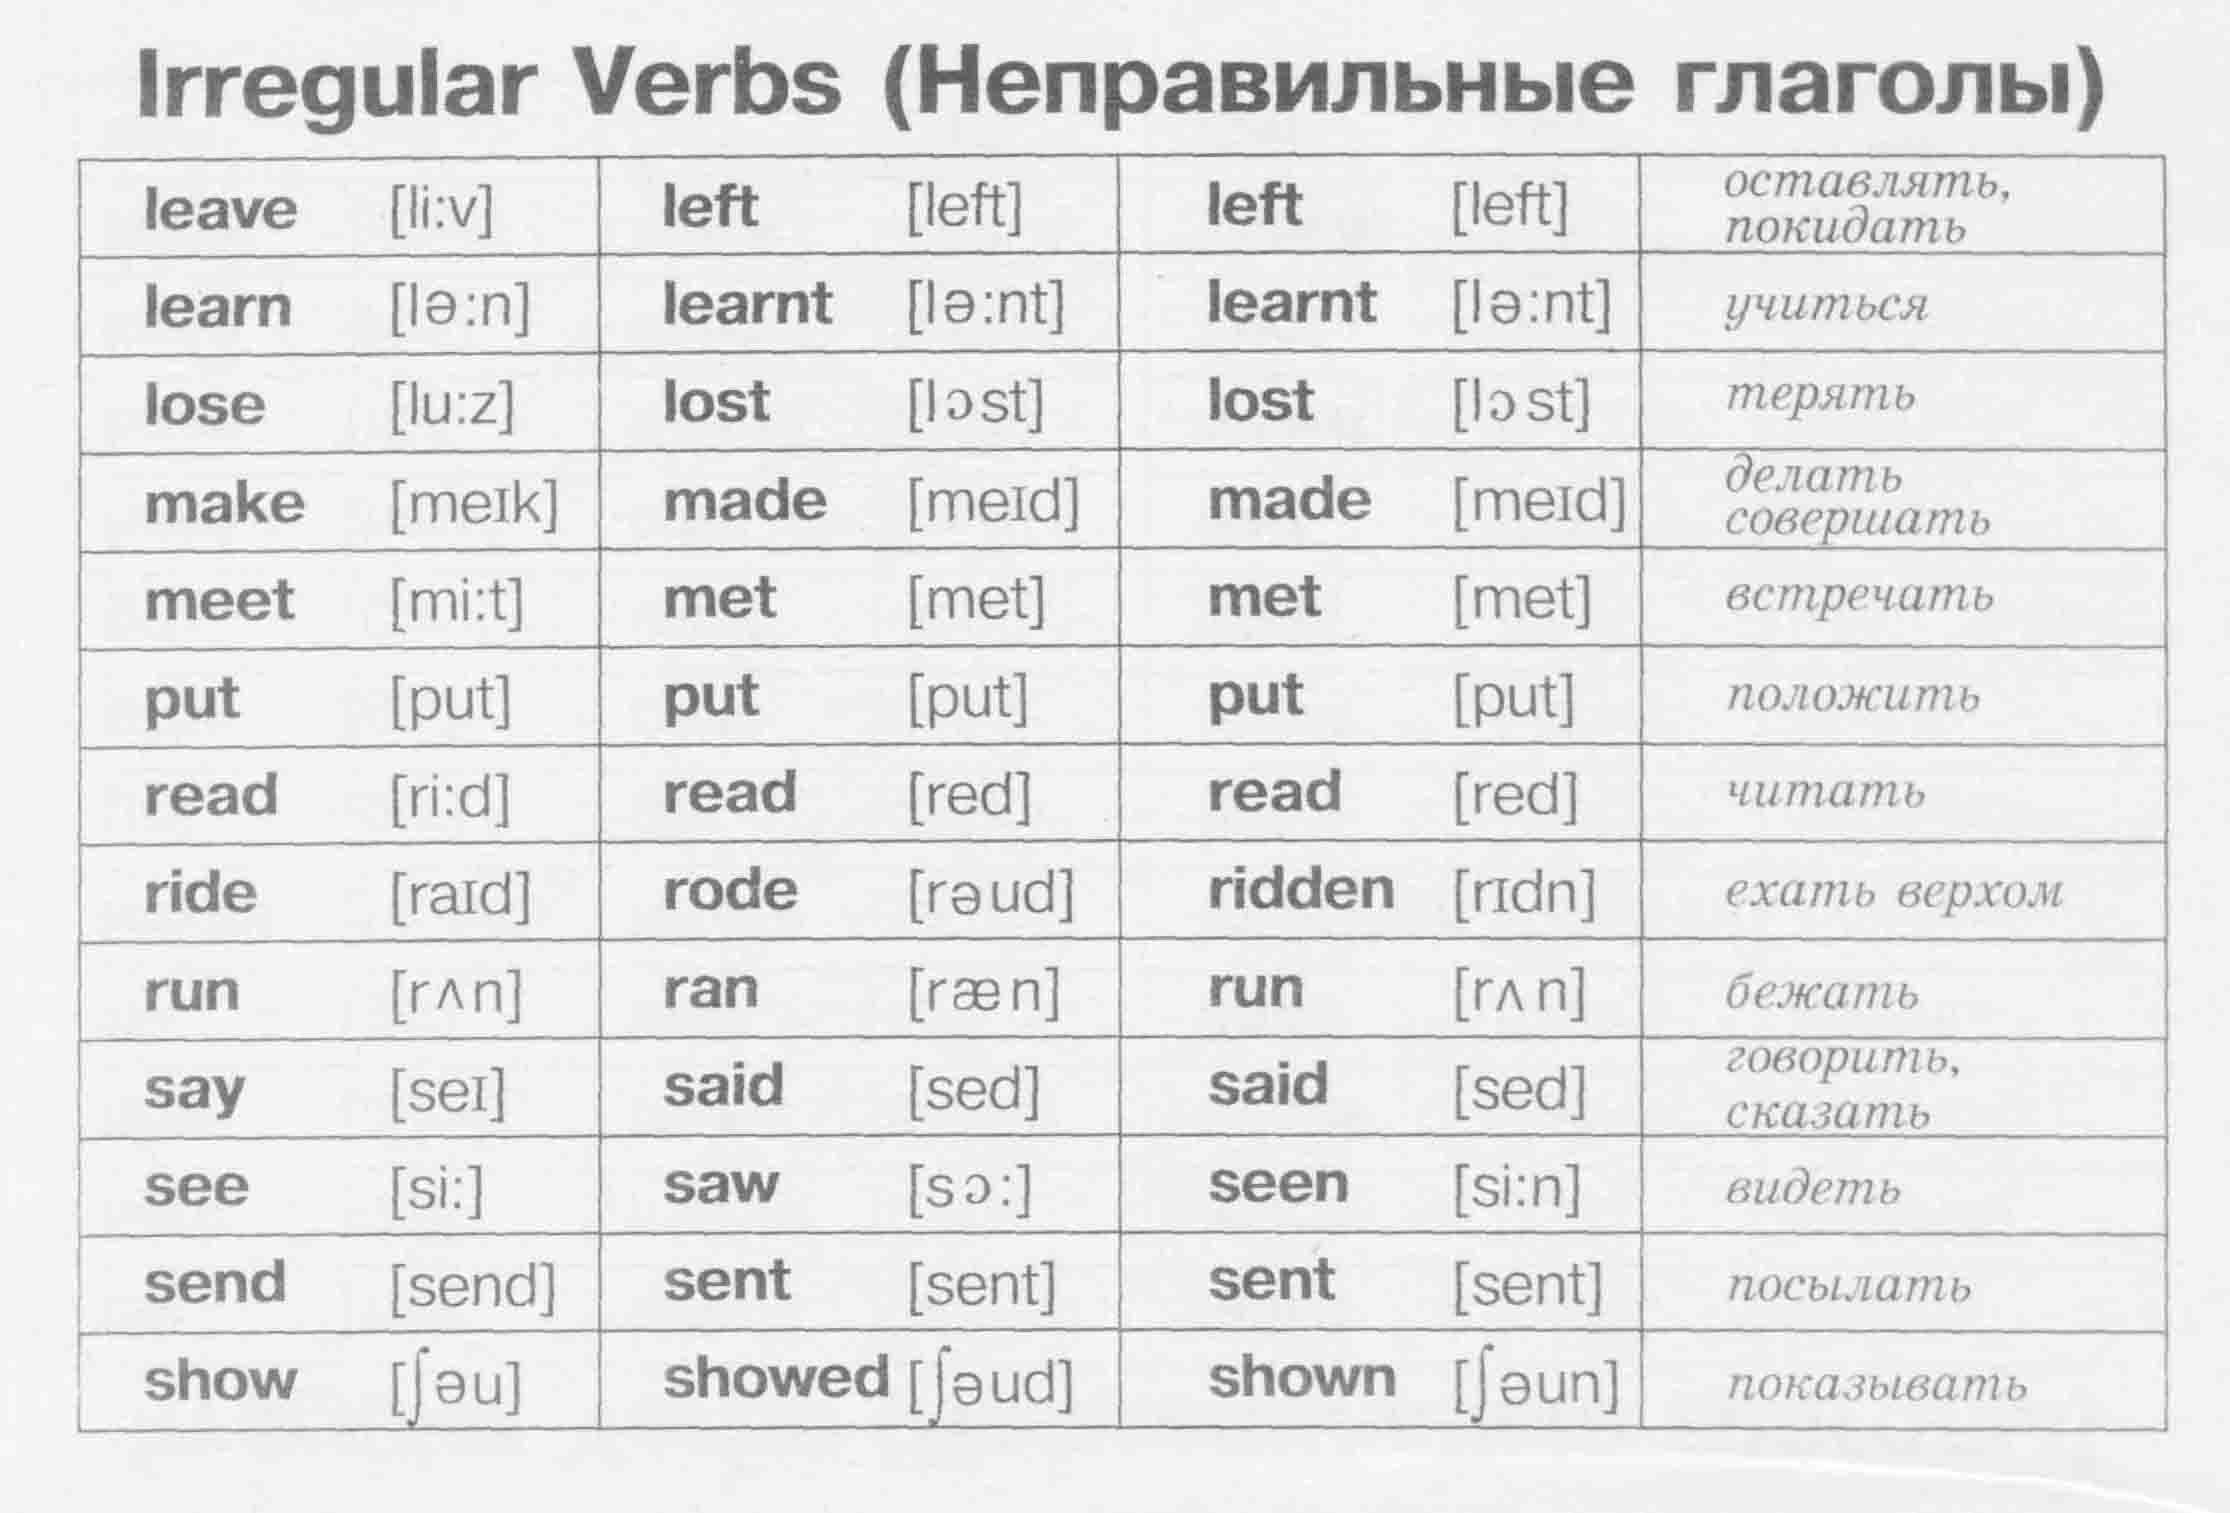 Неправильные глаголы английского языка на русском языке